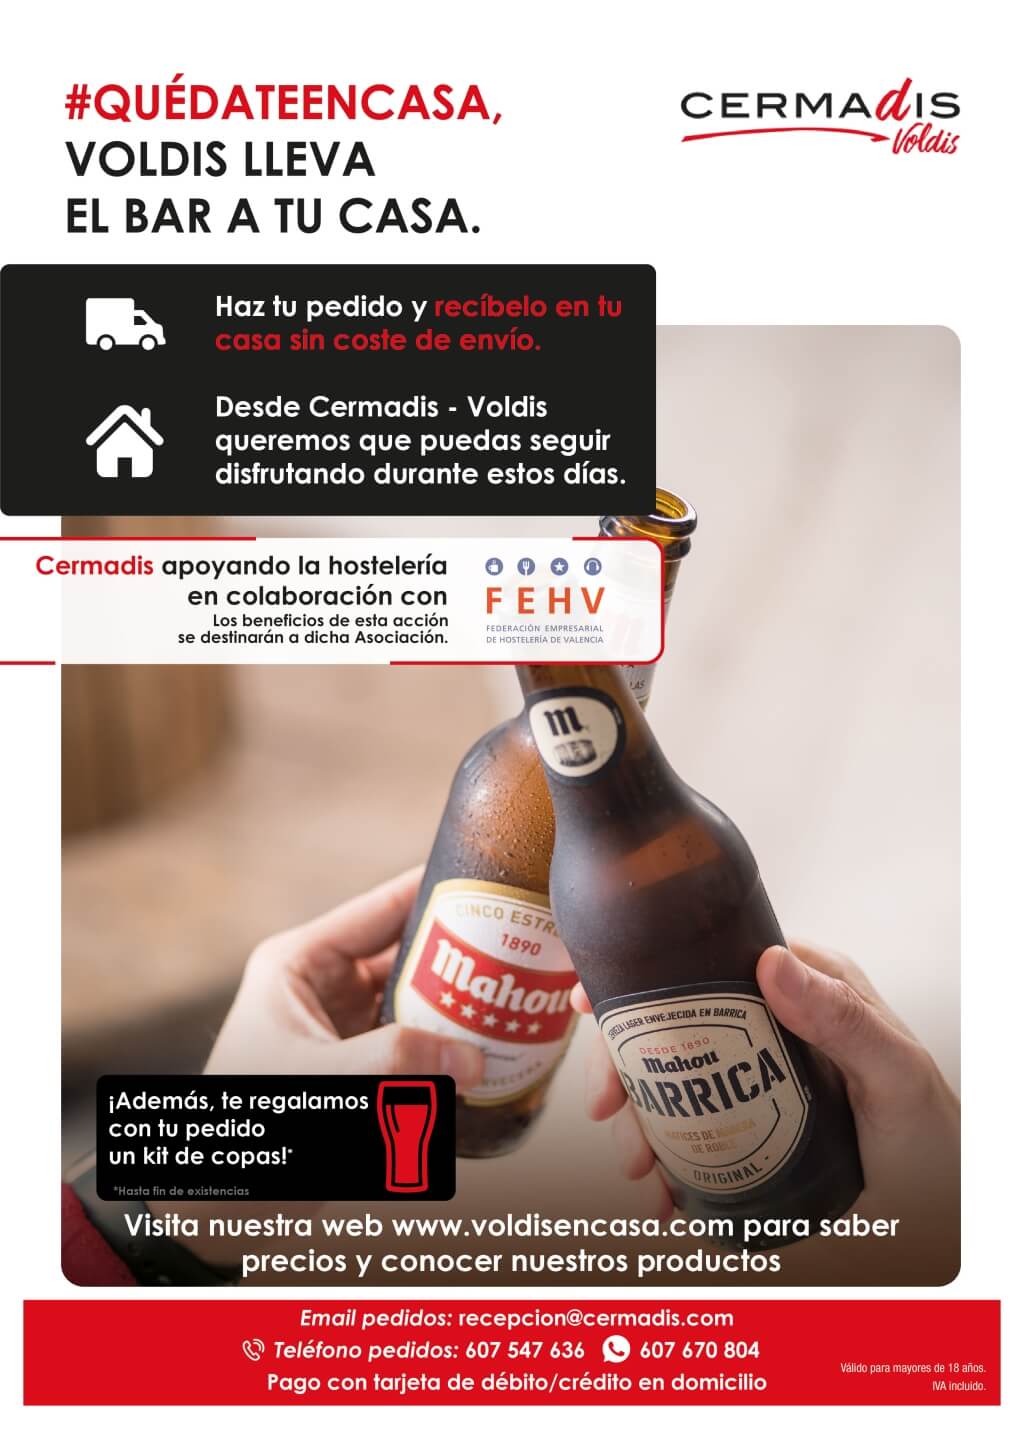 Cermadis Voldis llevará los bares a los hogares valencianos y donará los beneficios a los hosteleros locales